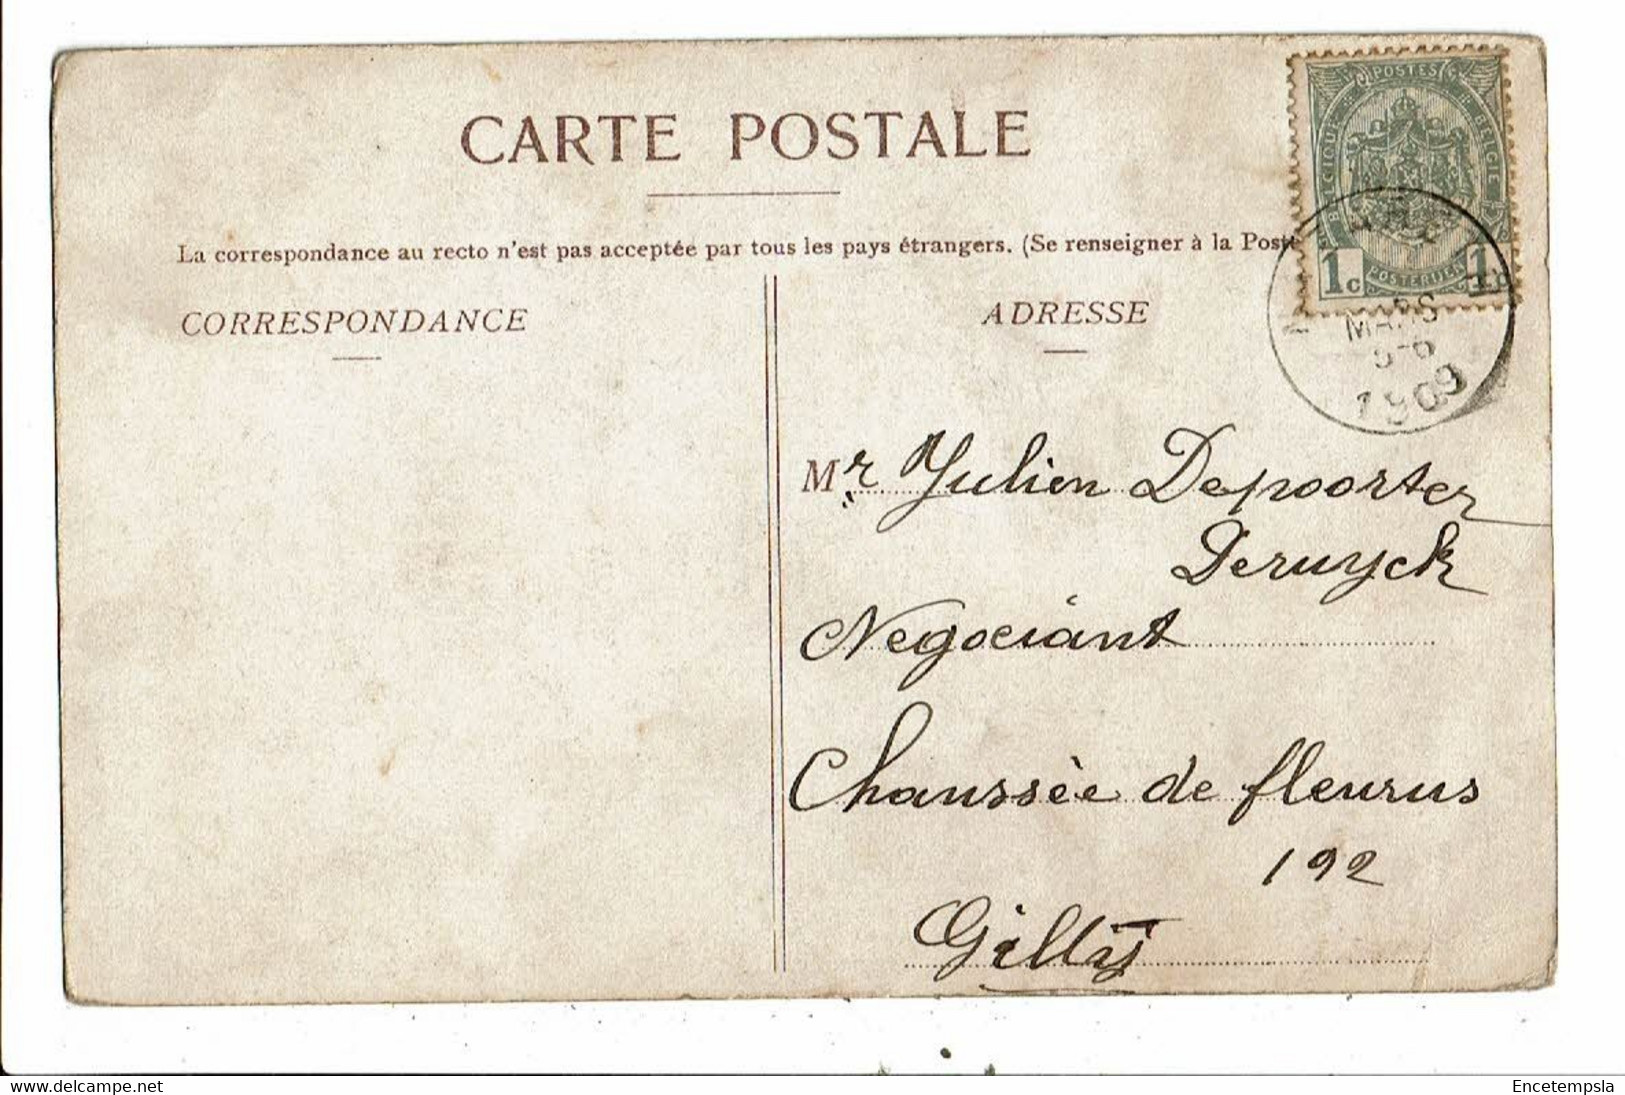 CPA-Carte Postale- Belgique- Nazareth-De Kerk -1909 VM21864g - Nazareth